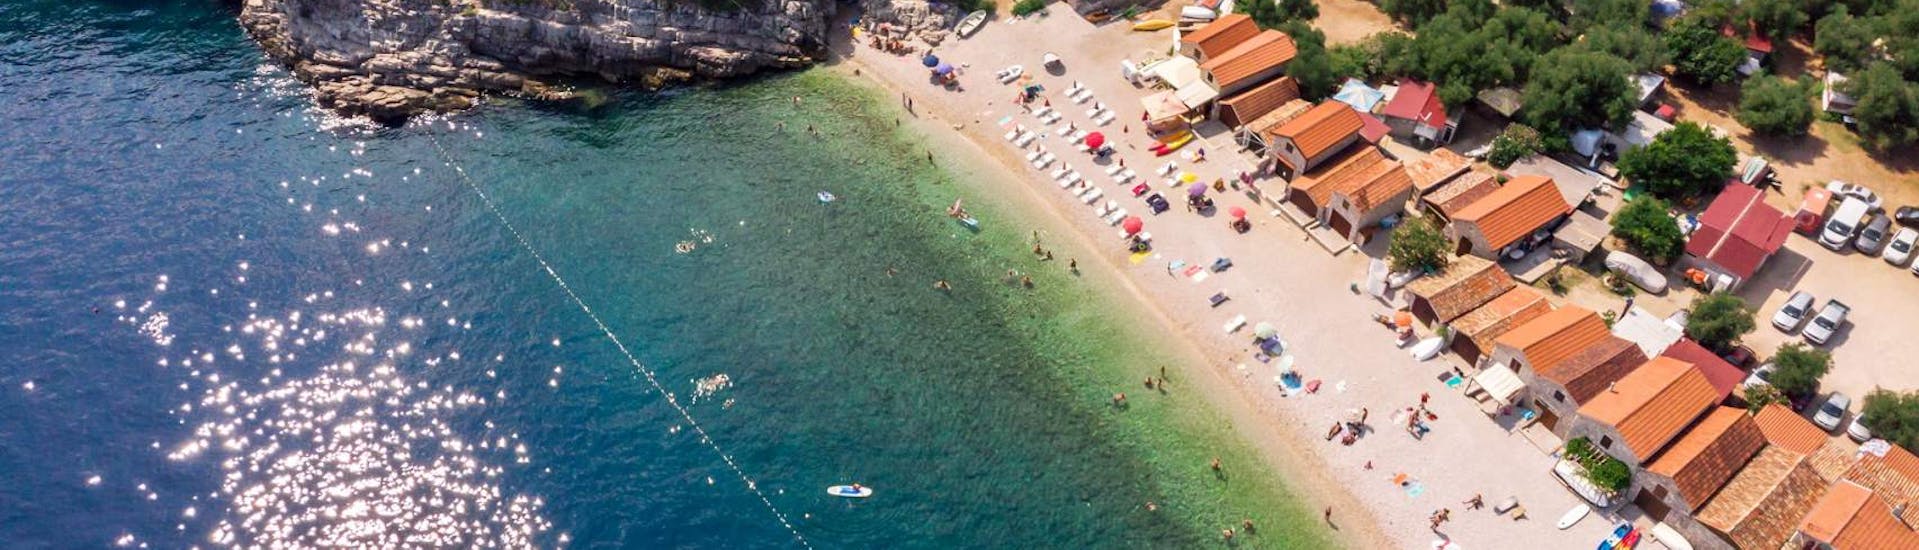 Una spiaggia che potrete visitare durante la Gita in catamarano con fondo di vetro da Malinska e Nijvice a Beli sull'isola di Cherso con Aquavision Aquarius Malinska.